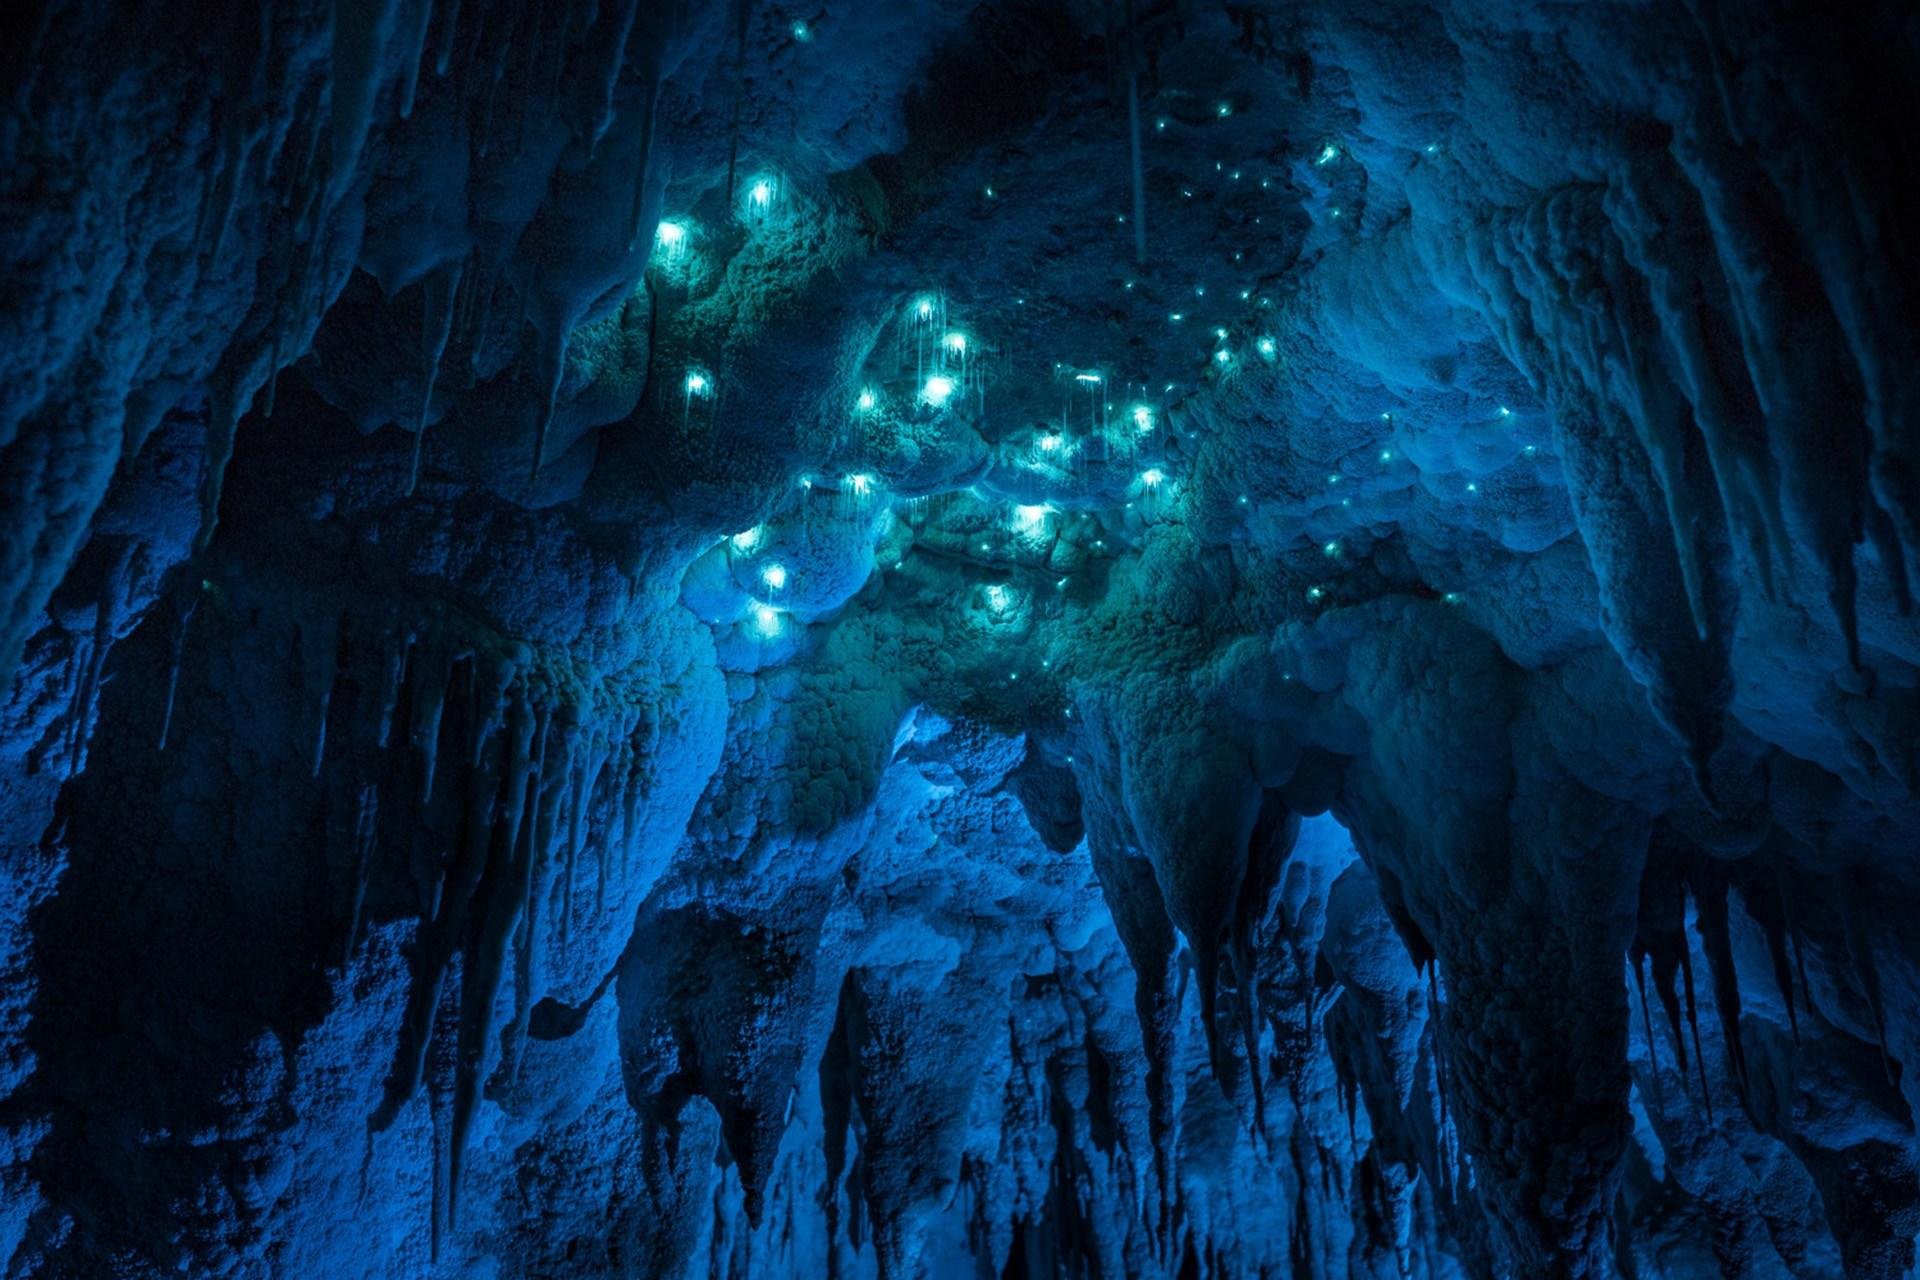 Cave v. Светящиеся пещеры Вайтомо новая Зеландия. Пещеры светлячков Вайтомо. Пещеры светлячков Вайтомо, новая Зеландия. Пещера Вайтомо в новой Зеландии фото.